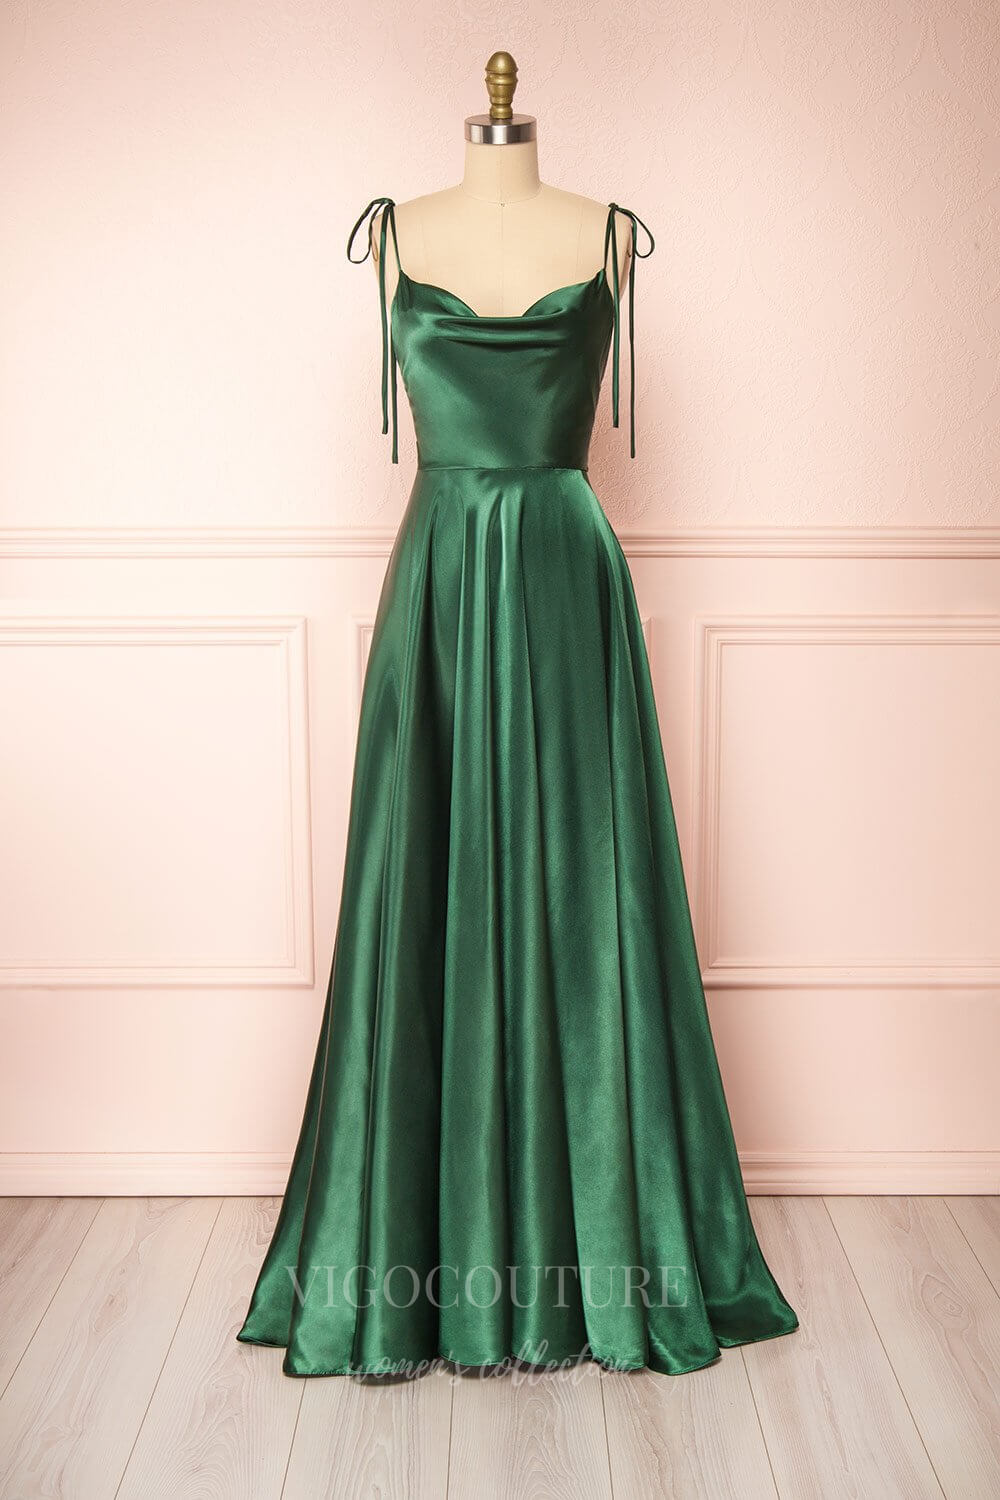 vigocouture-Silver Spaghetti Strap Prom Dress 20574-Prom Dresses-vigocouture-Green-US2-